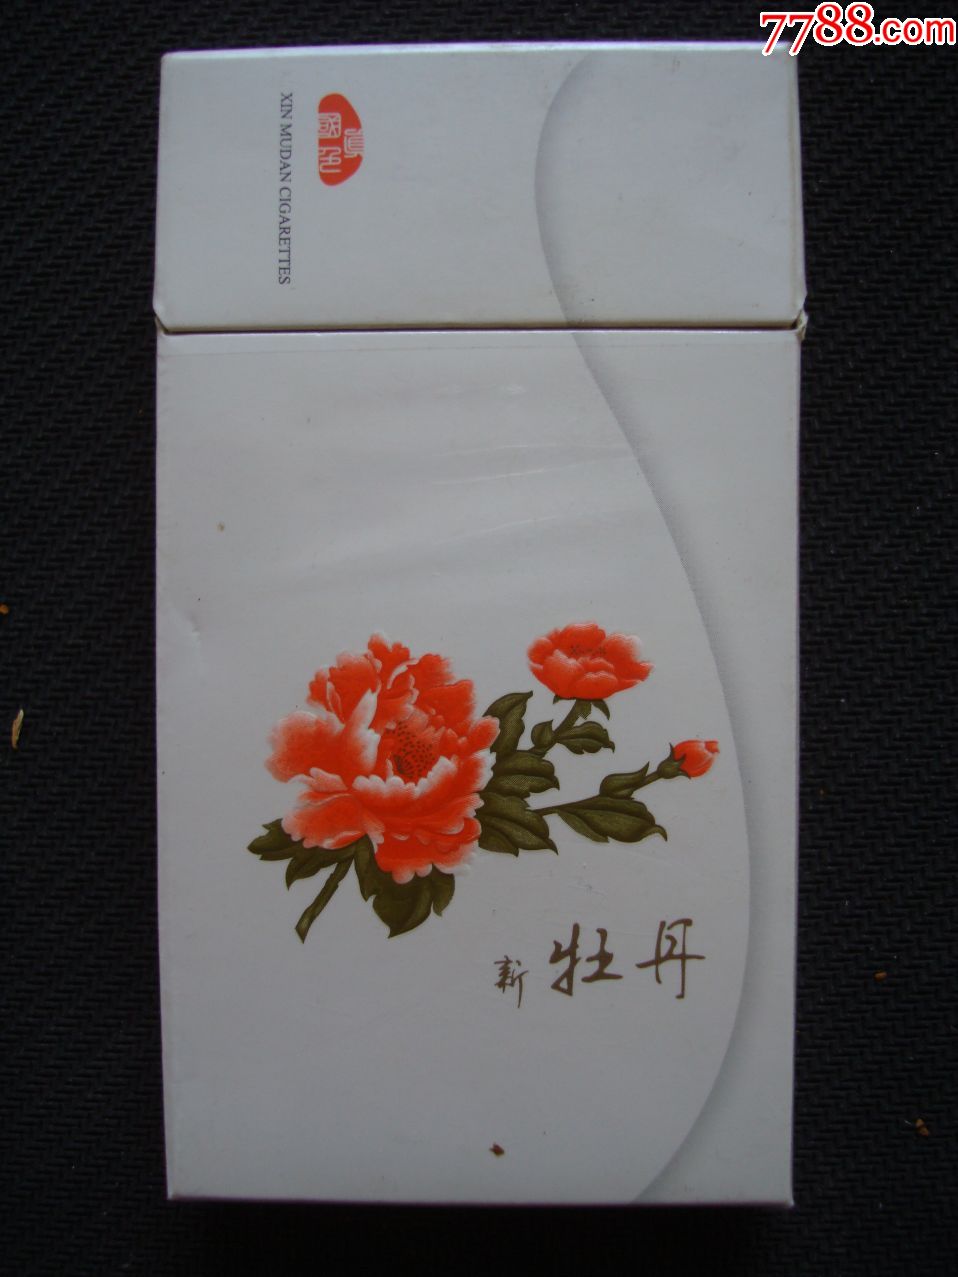 新牡丹――专*出囗――细支,烟标/烟盒